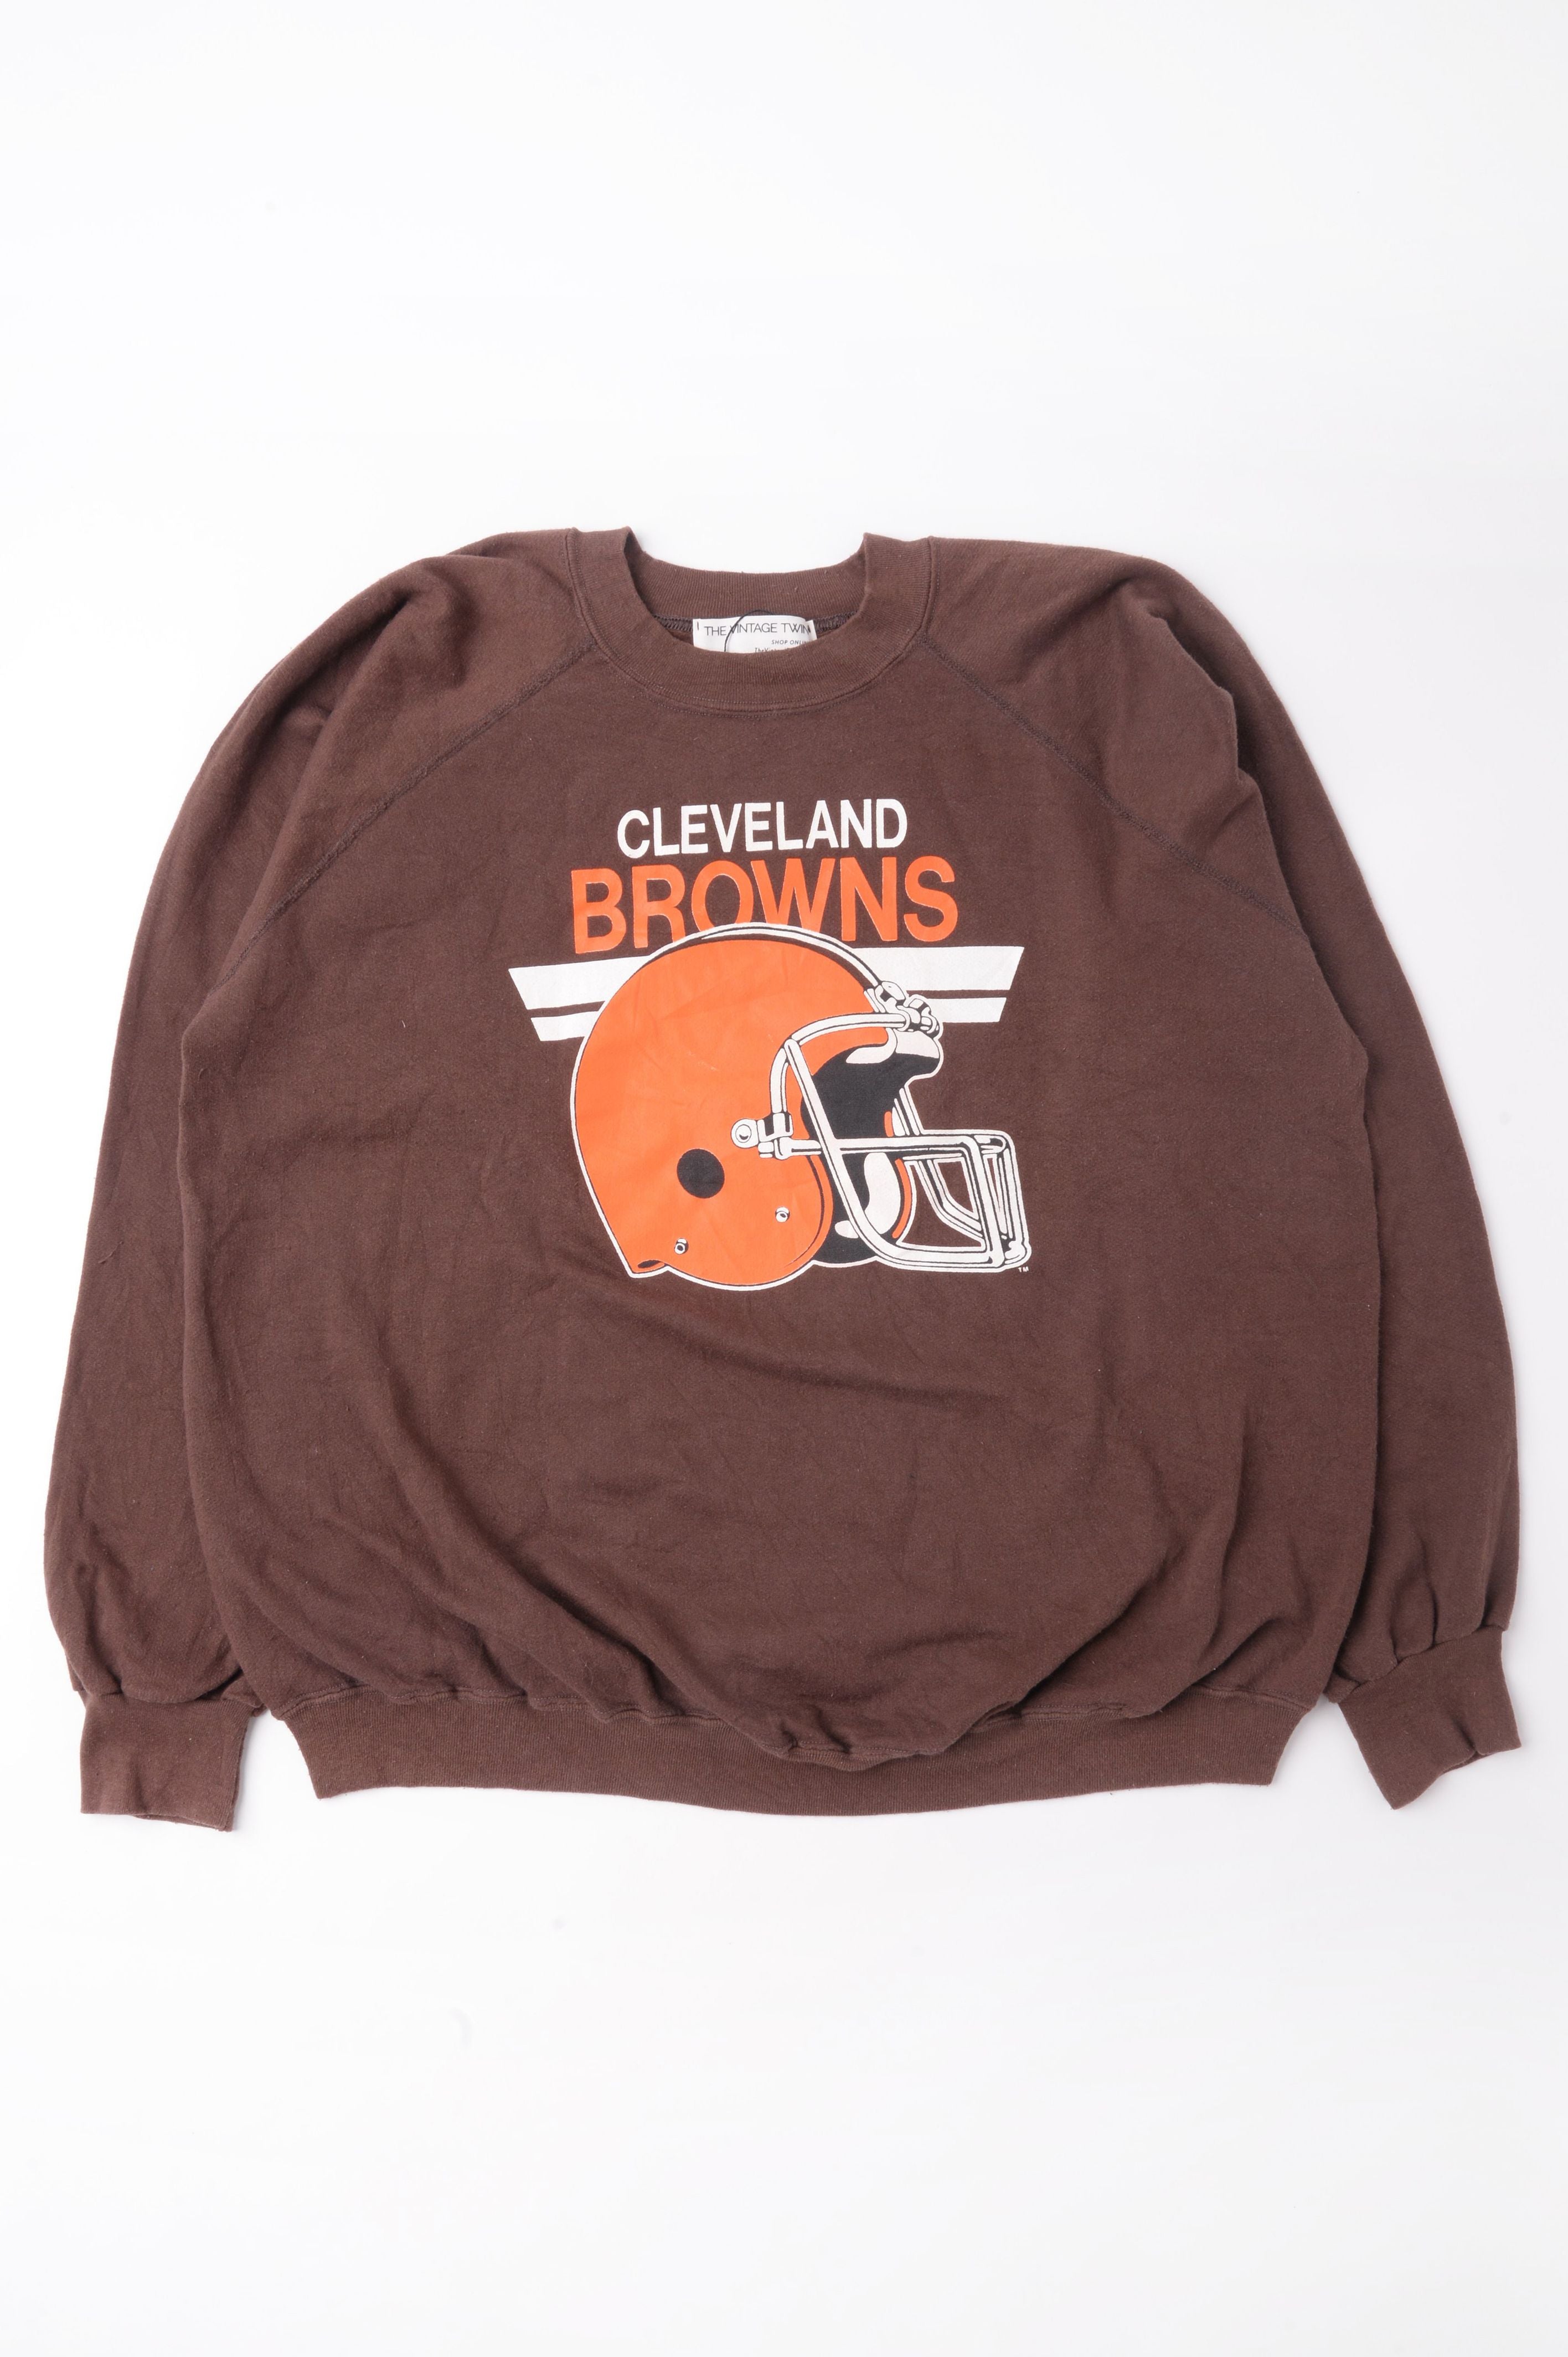 cleveland browns vintage sweatshirt